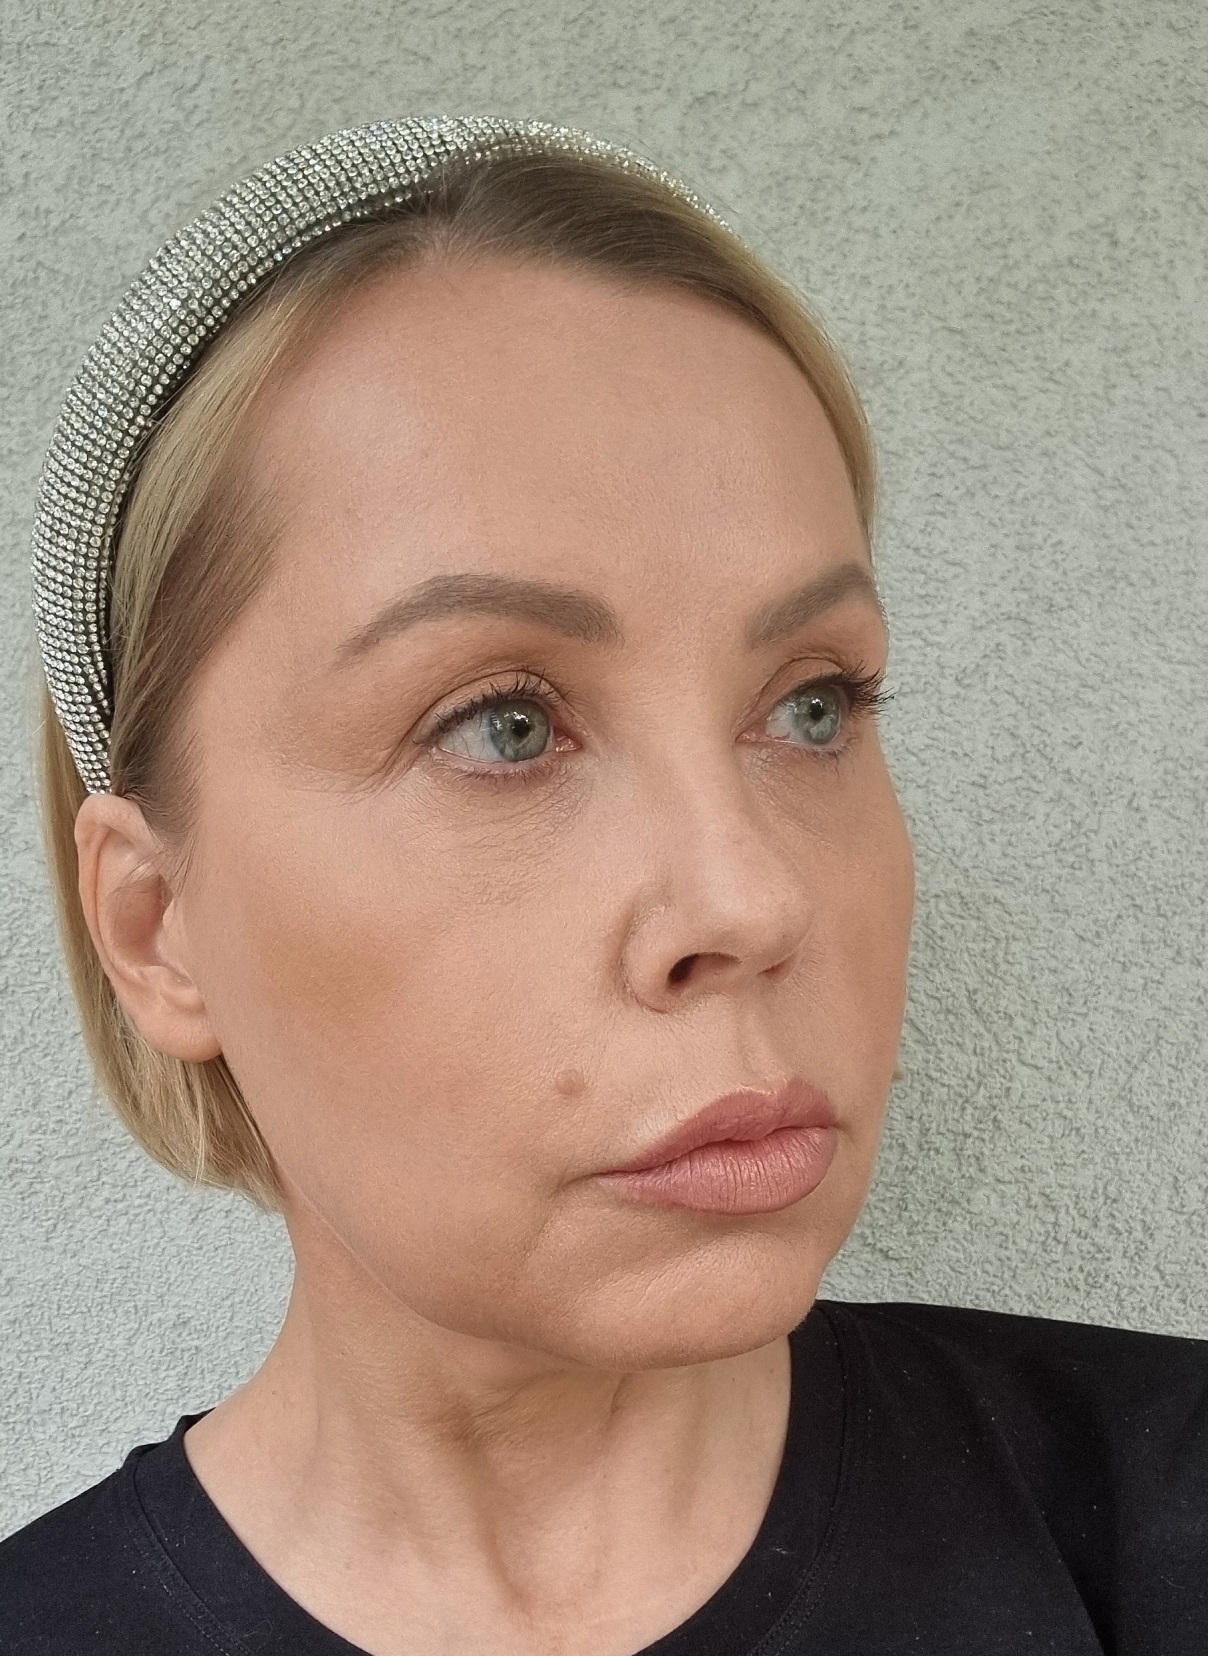 Makijaż Dr Irena Eris - nie tylko na czerwony dywan